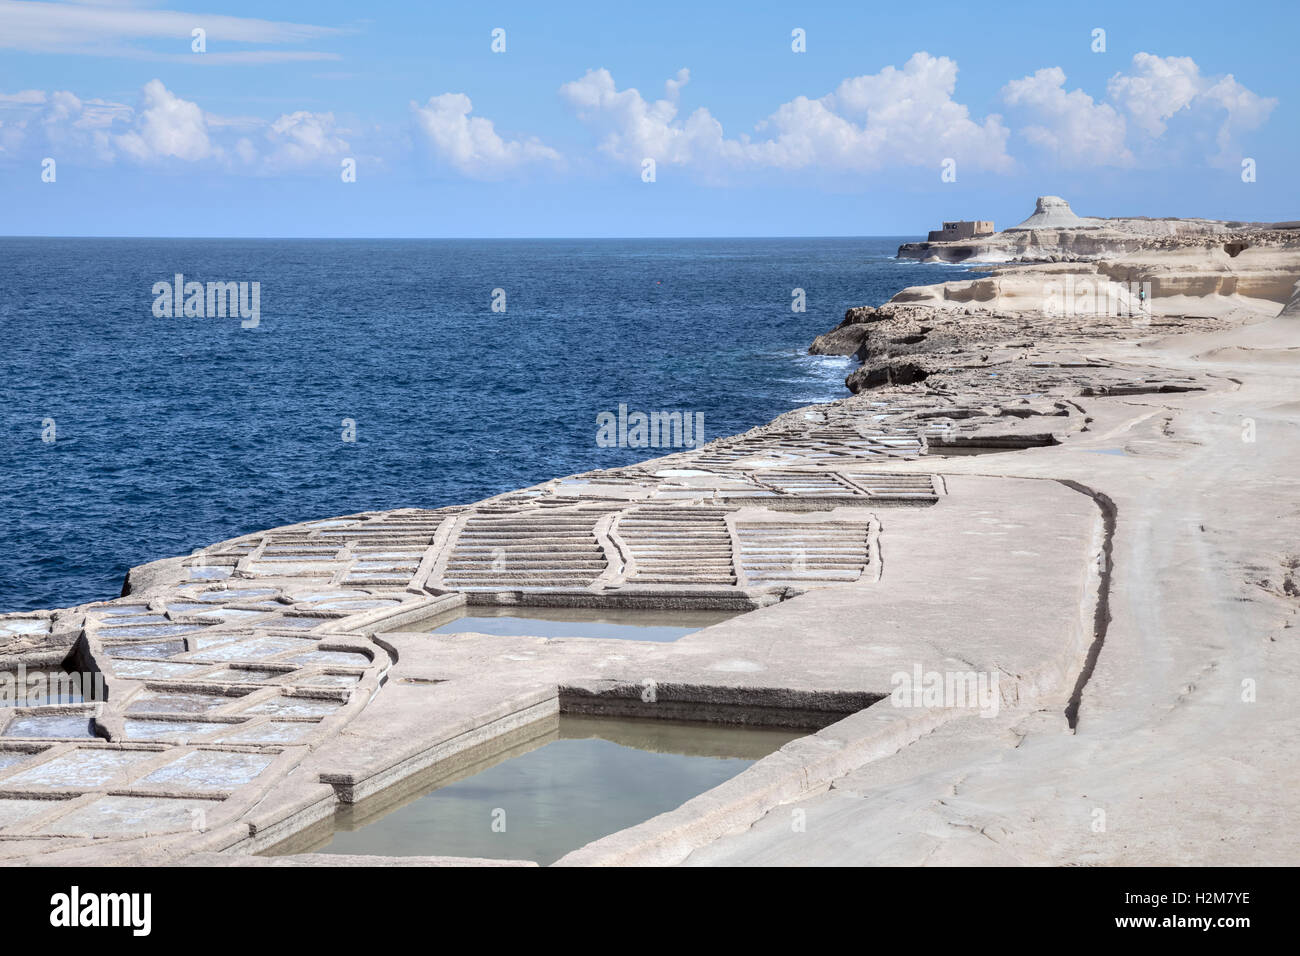 Xwejni Bay, Zebbug, Marsalforn, Gozo, Malta Stock Photo